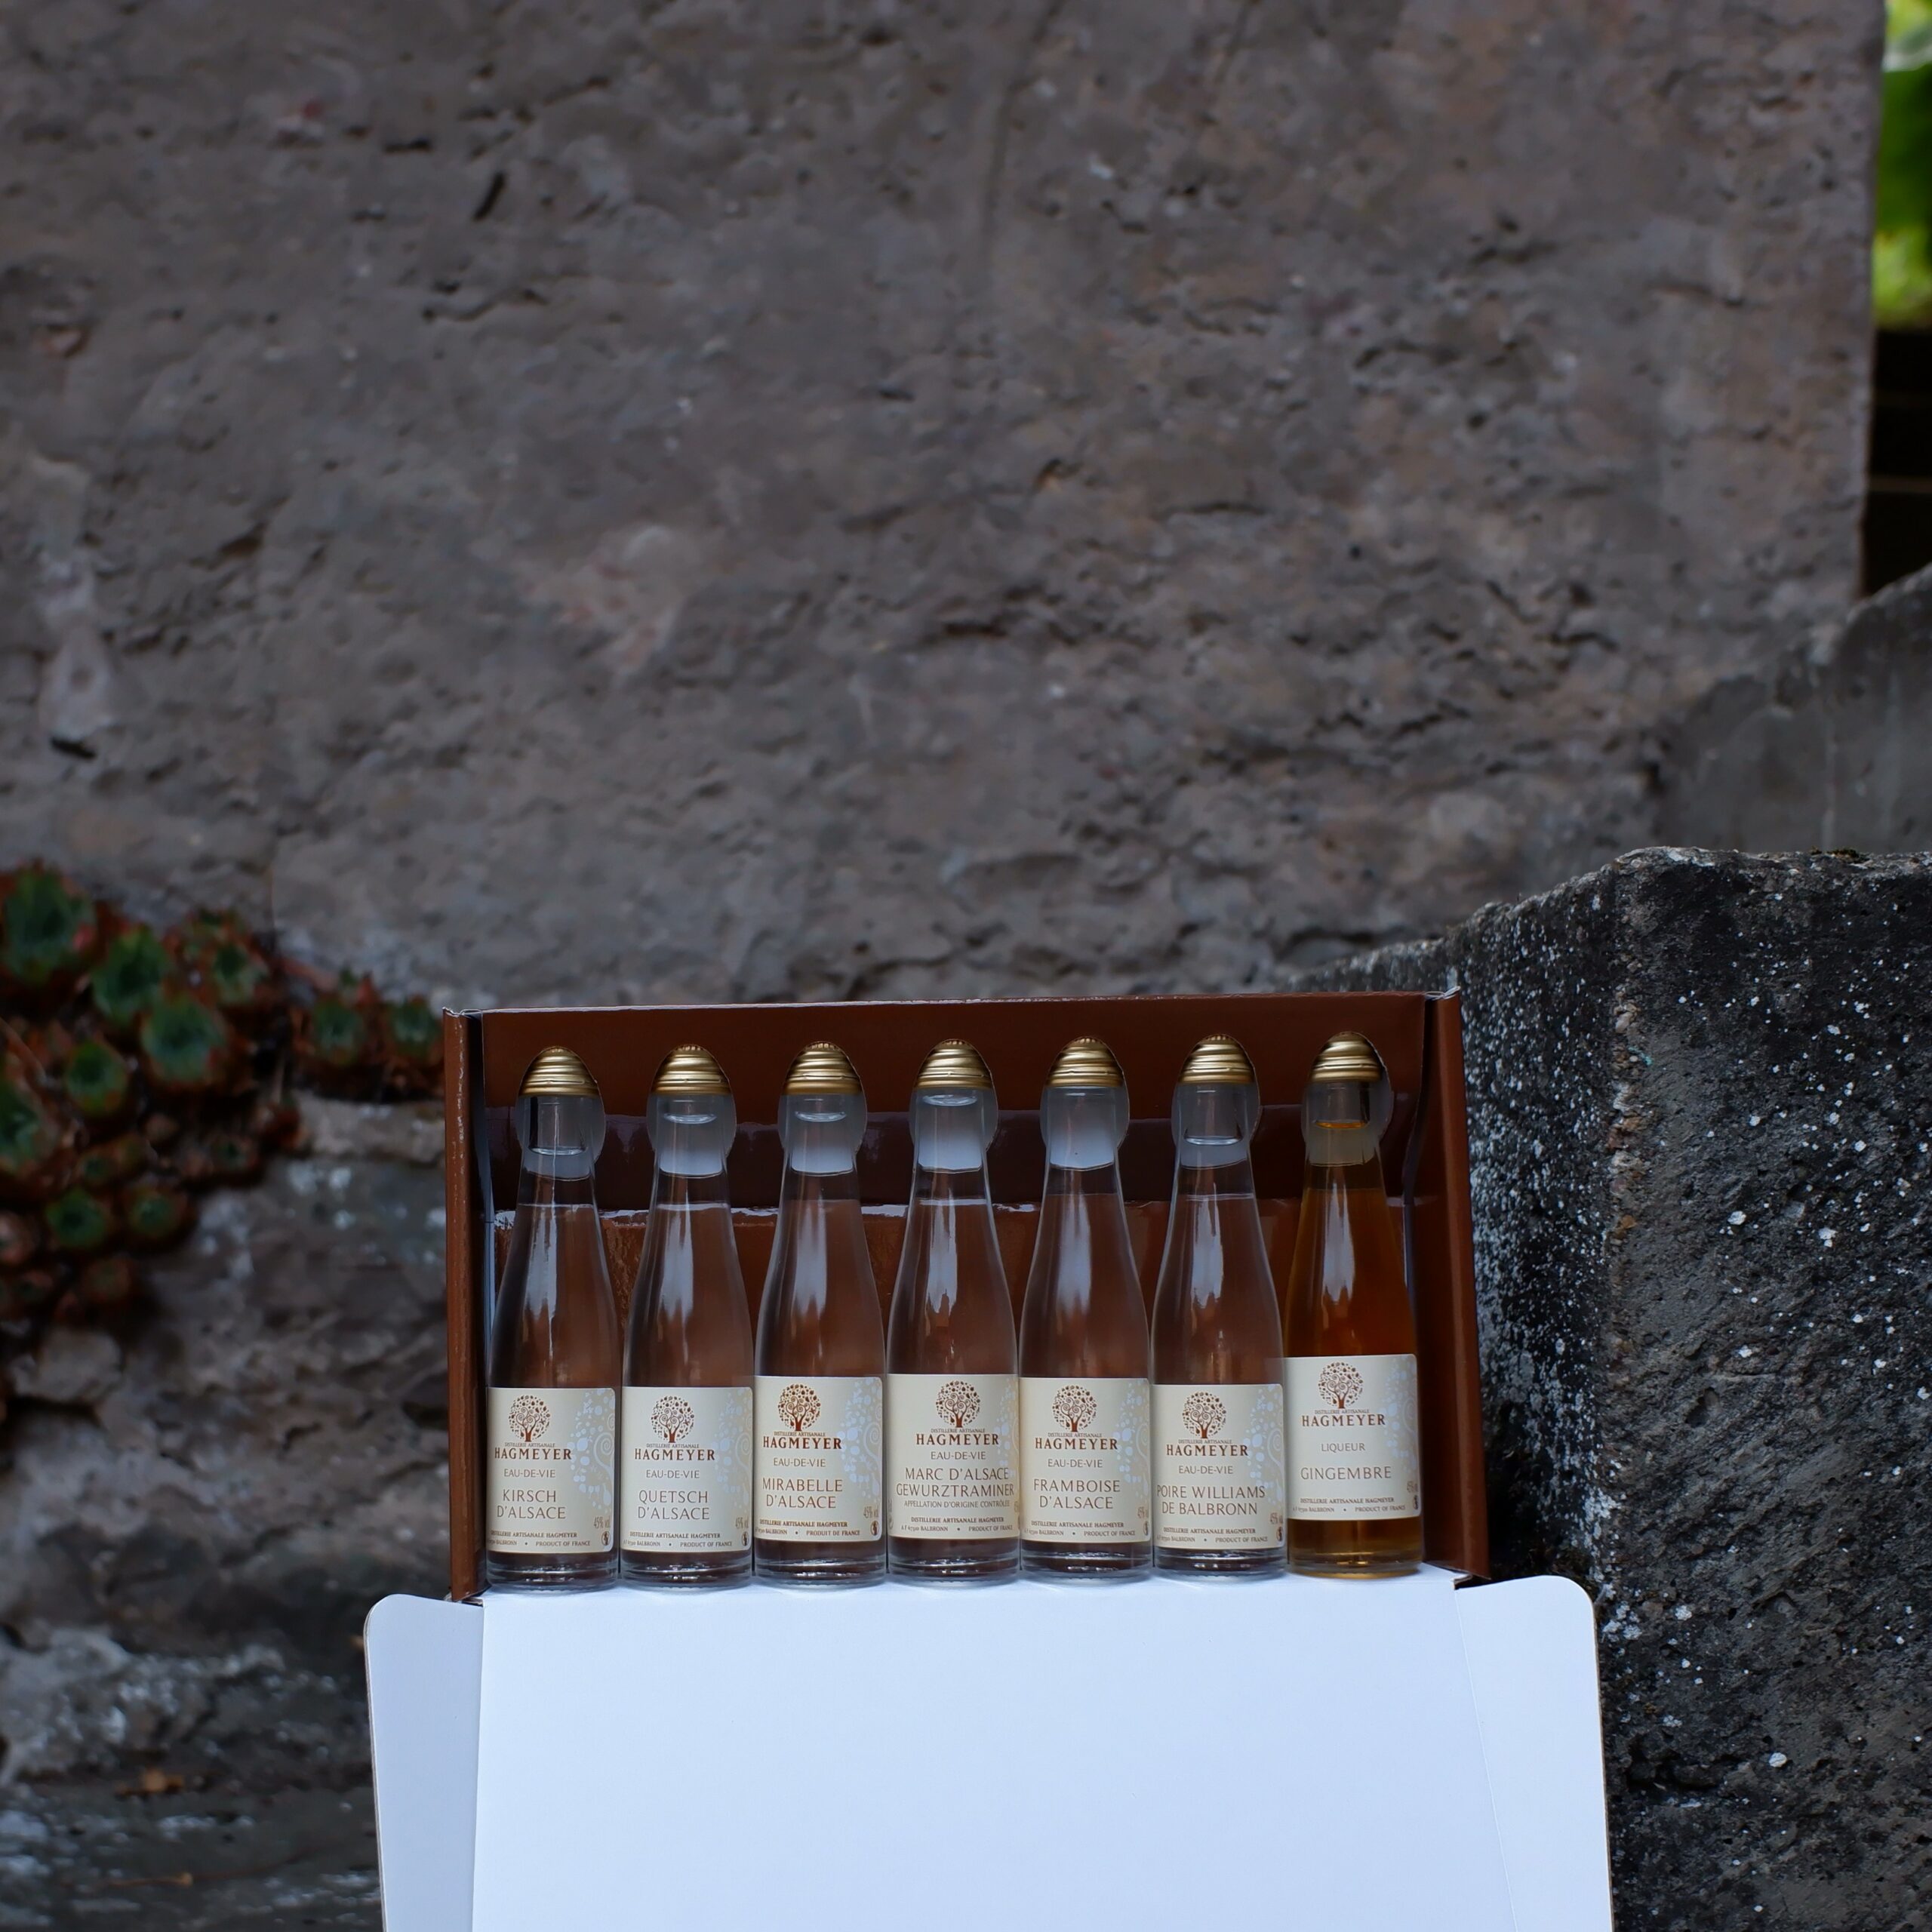 Eaux de Vie Exceptionnelles d'Alsace Poire williams - Distillerie